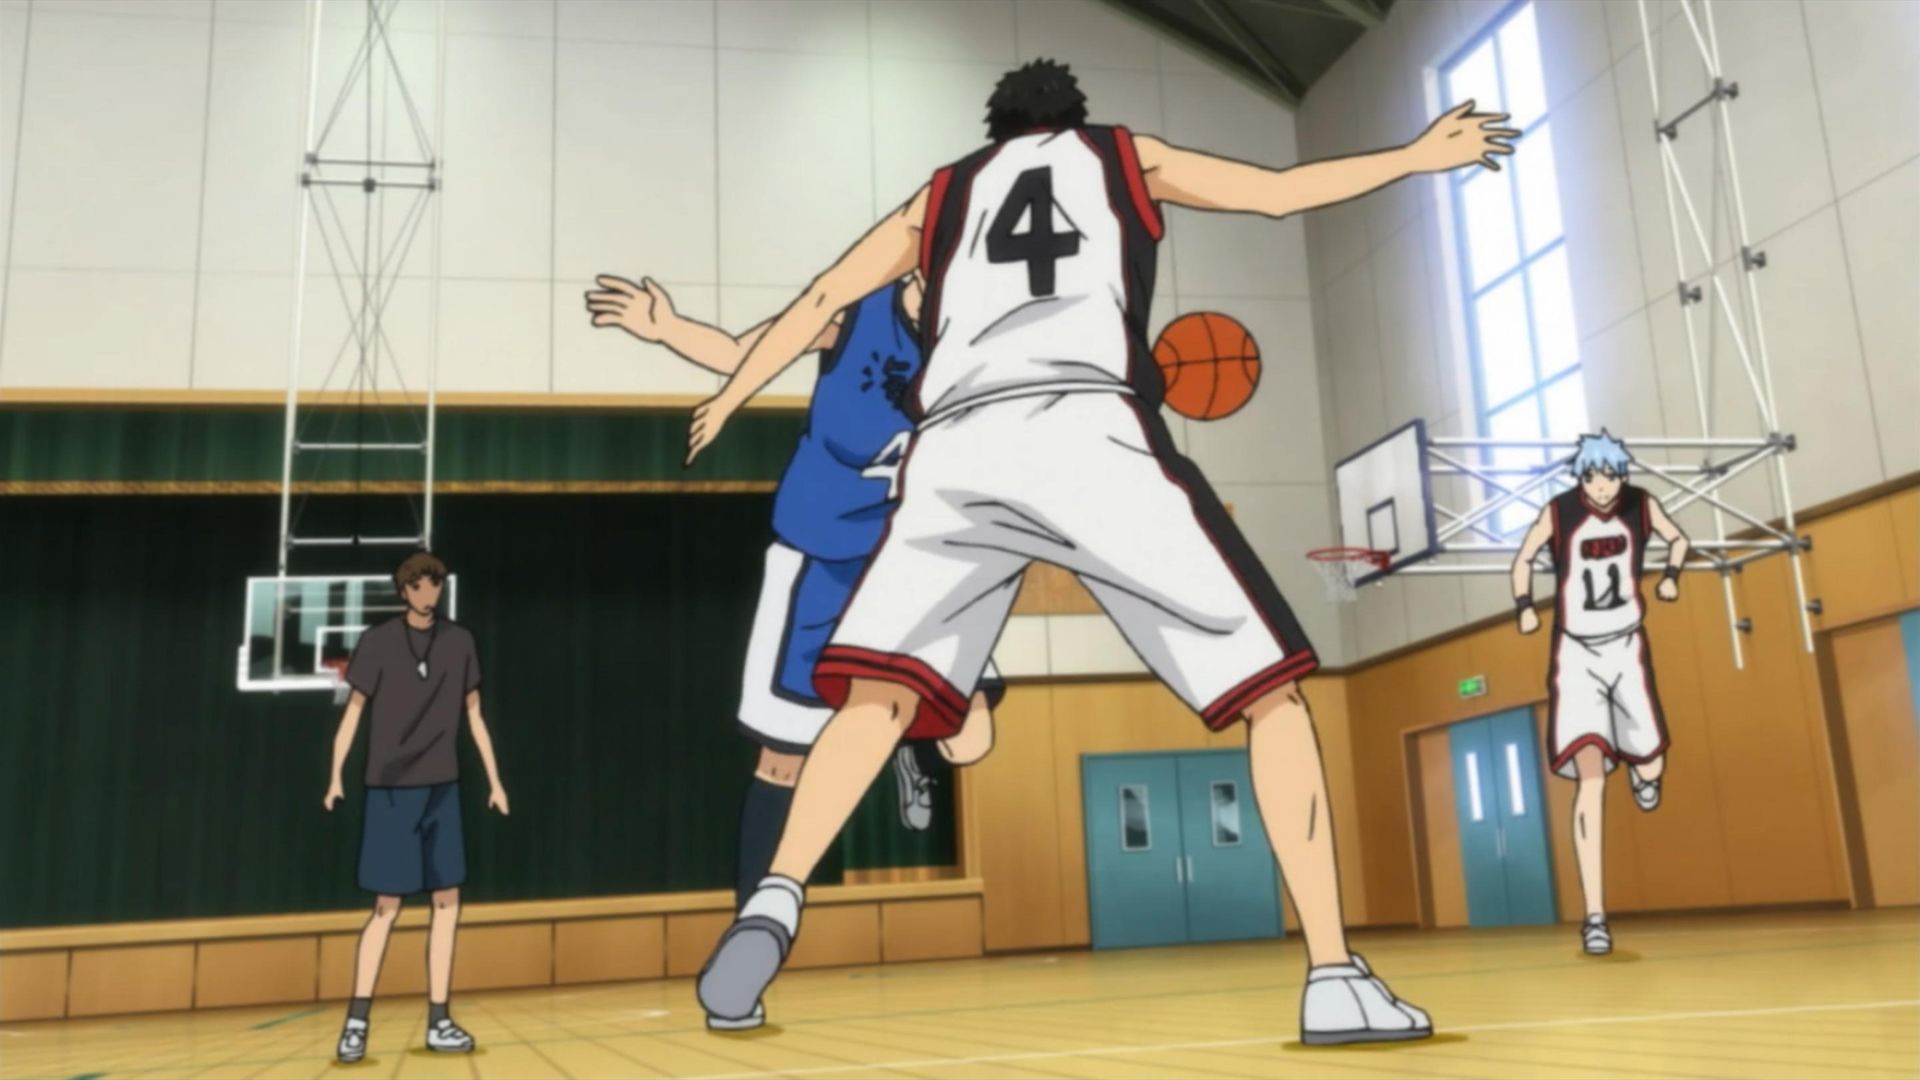 Kuroko's Basketball background